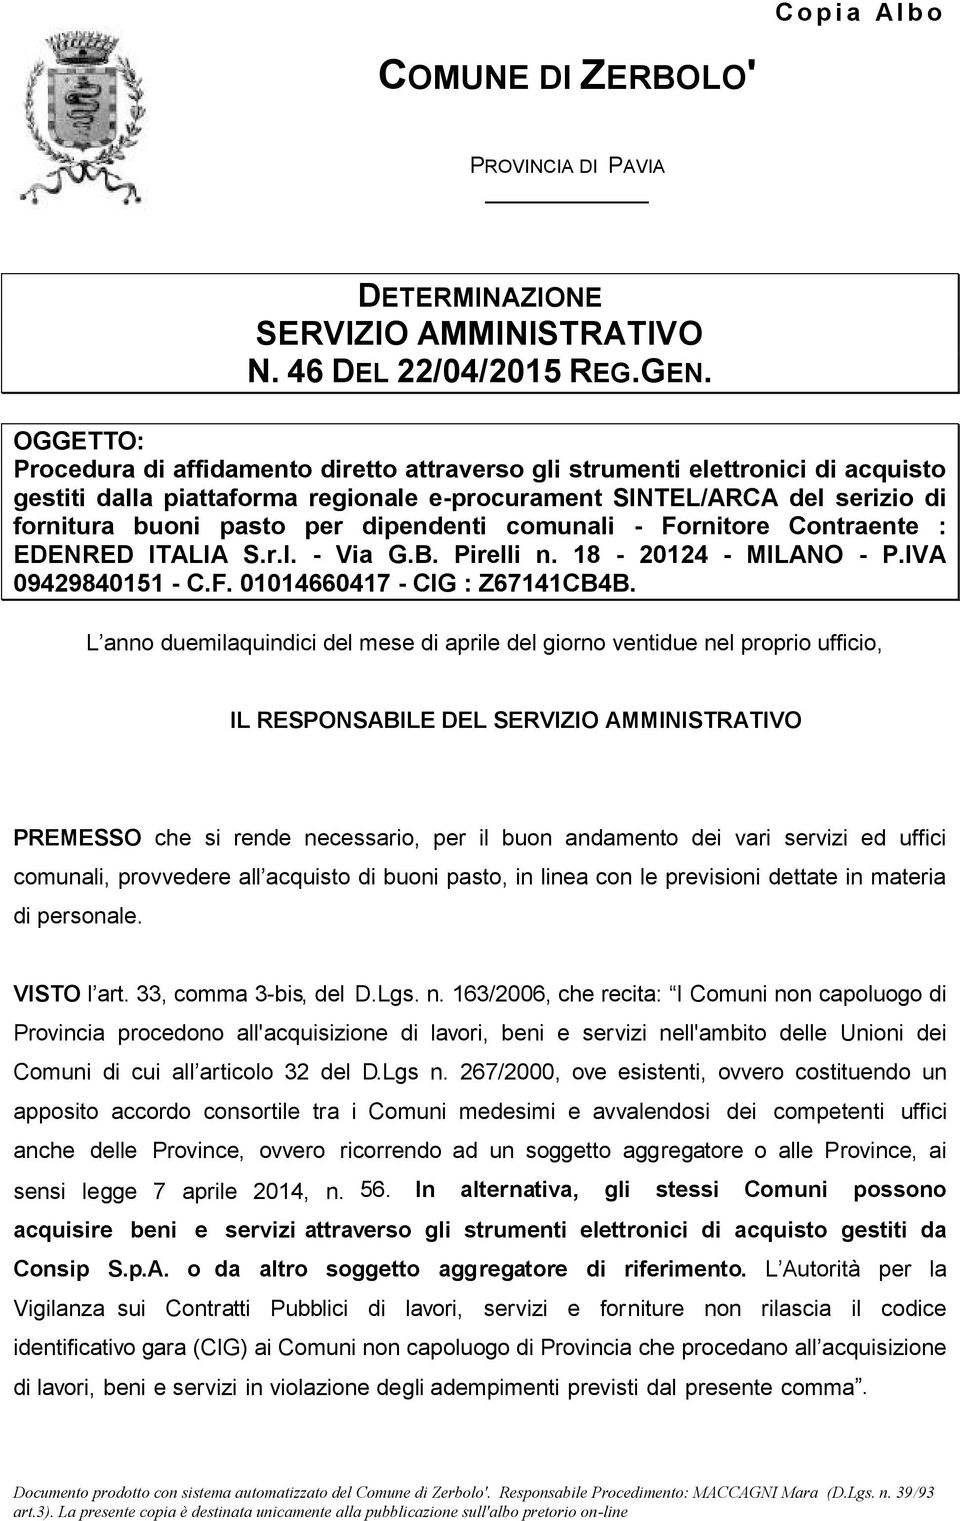 dipendenti comunali - Fornitore Contraente : EDENRED ITALIA S.r.l. - Via G.B. Pirelli n. 18-20124 - MILANO - P.IVA 09429840151 - C.F. 01014660417 - CIG : Z67141CB4B.